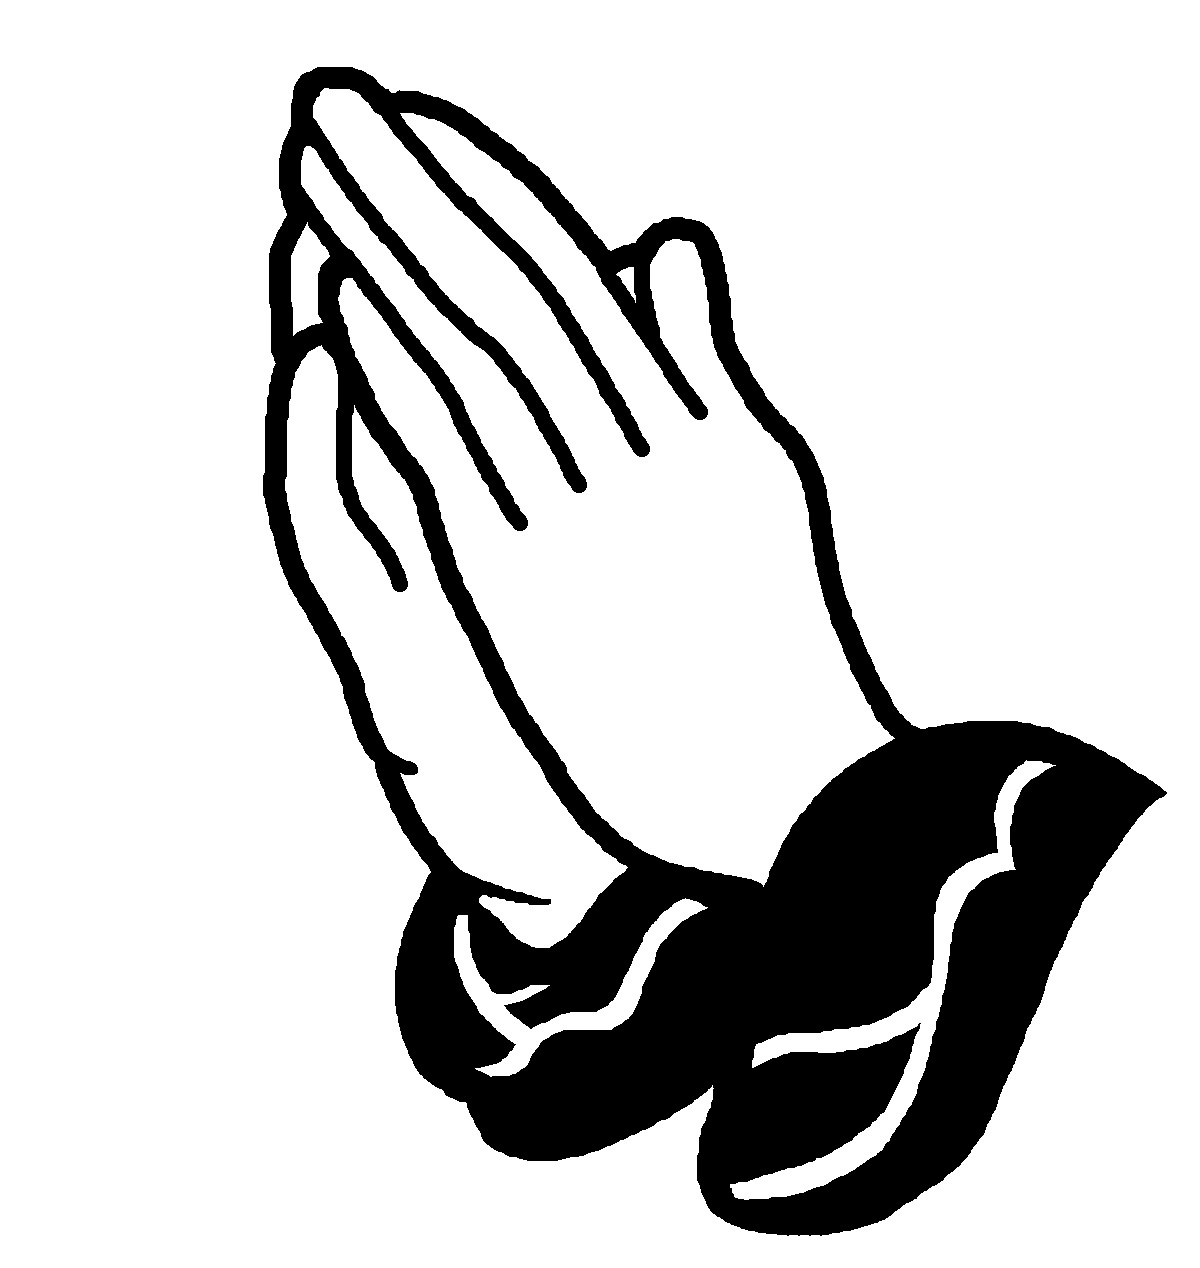 Free Praying Hands Images Free, Download Free Praying Hands Images Free ...